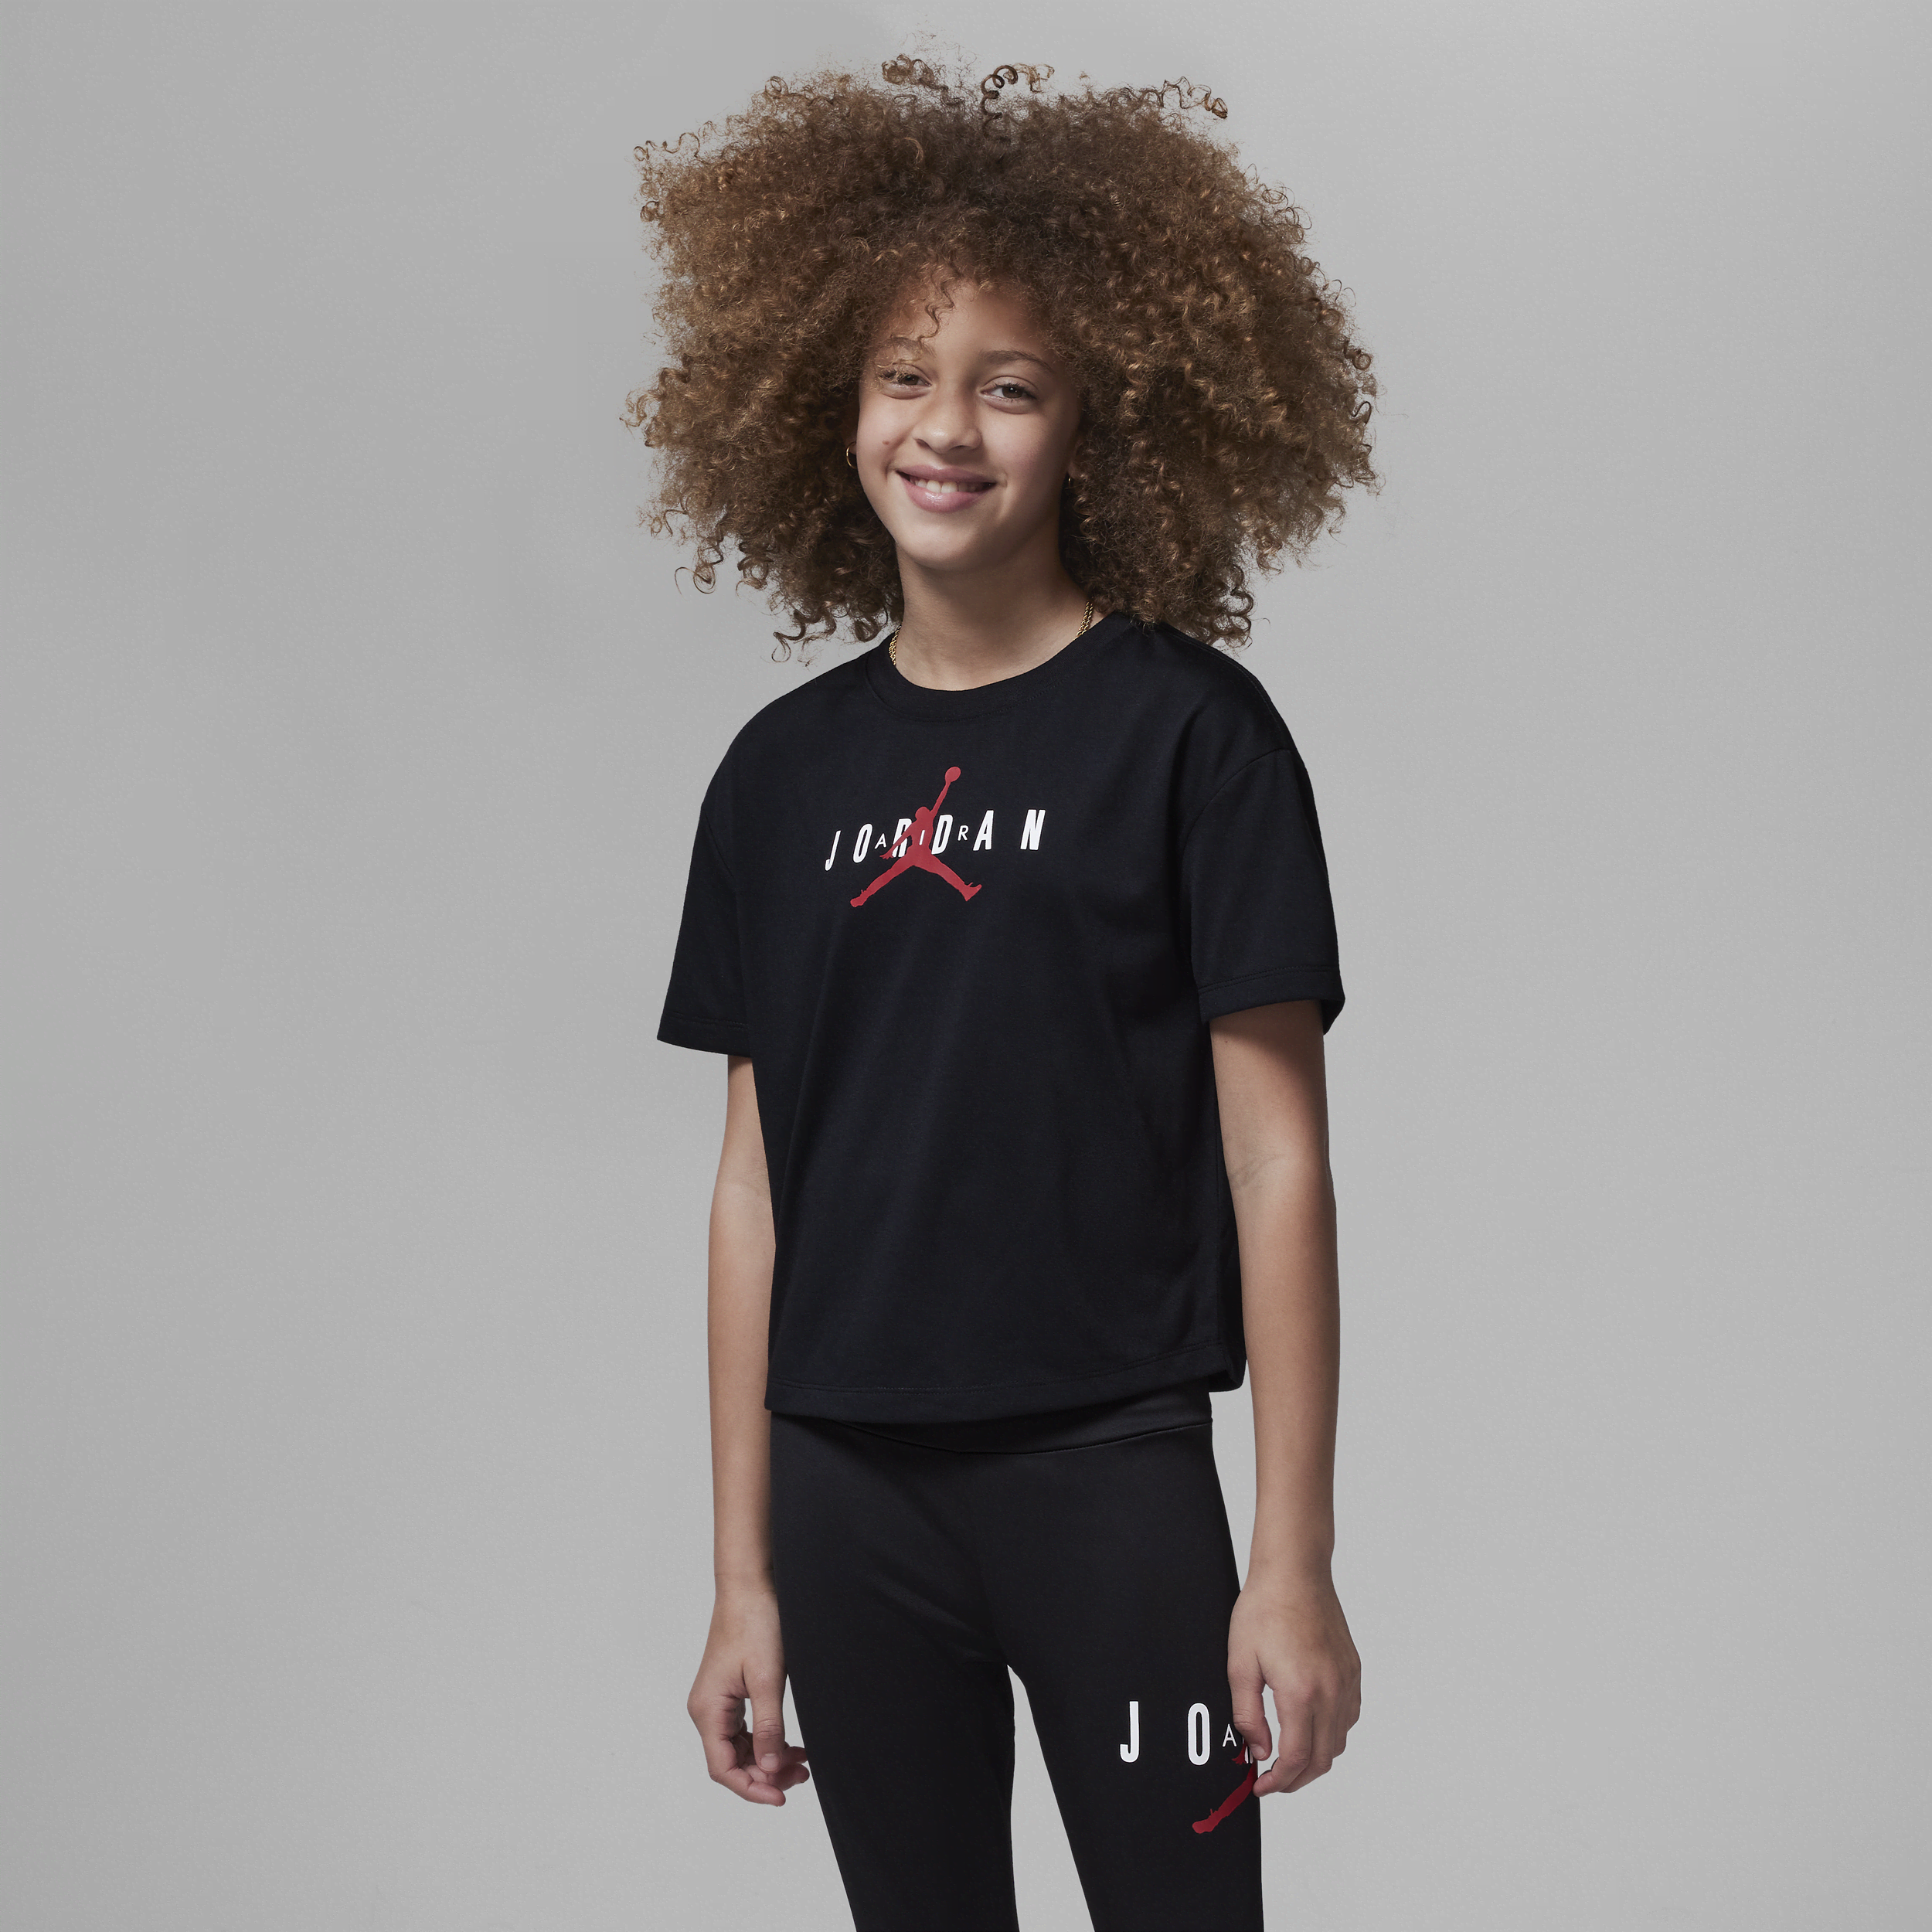 Jordan T-shirt voor kids - Zwart